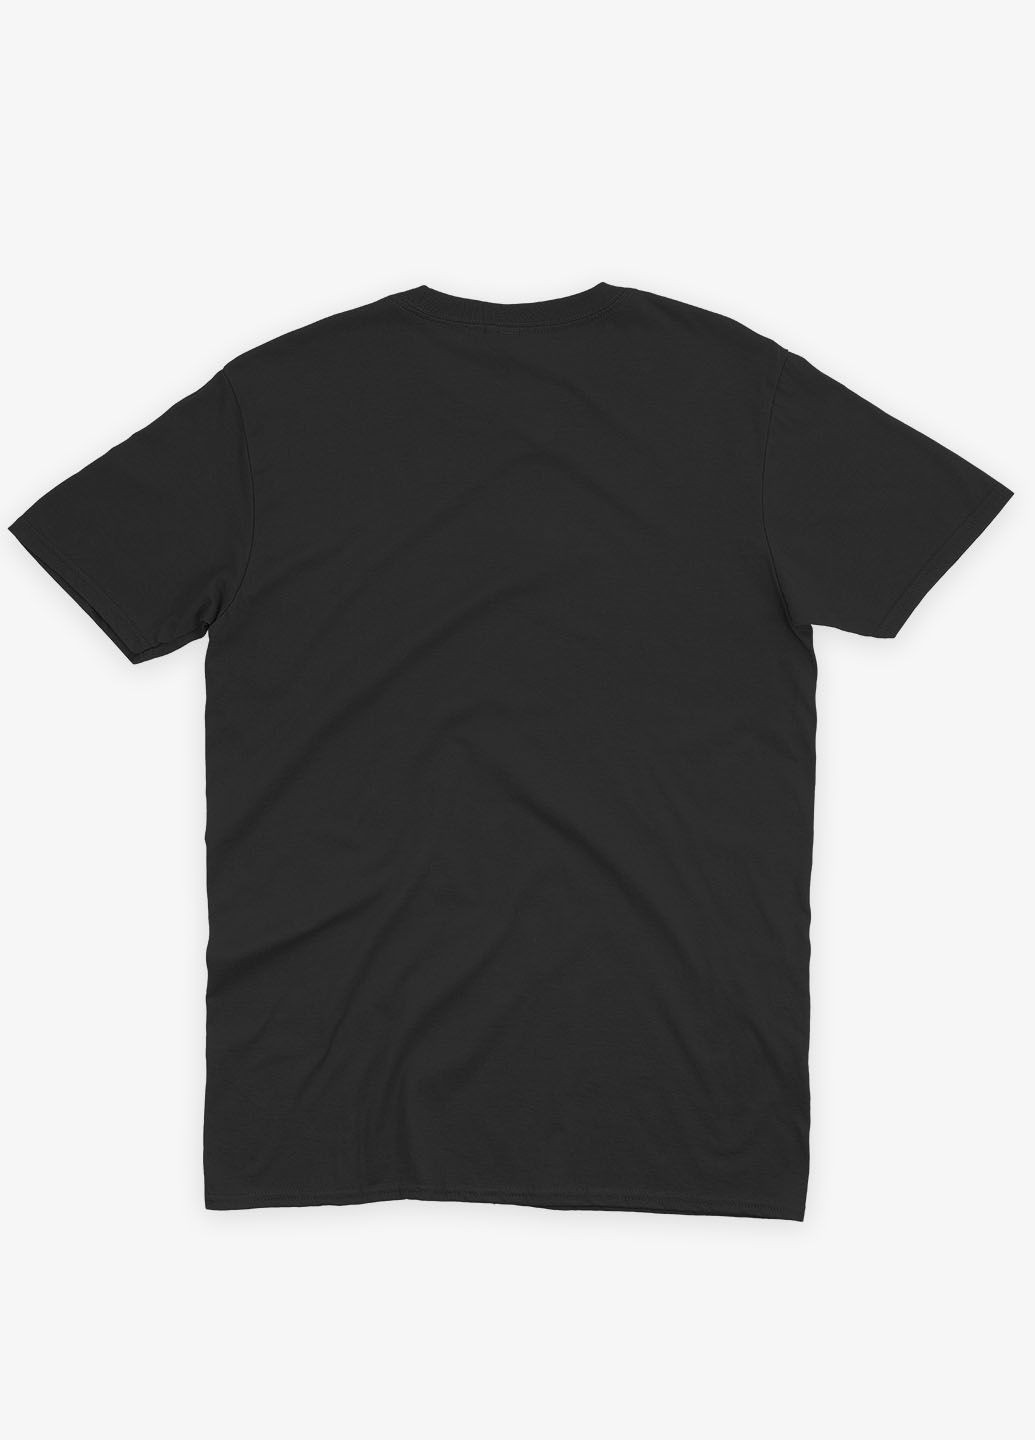 Черная мужская футболка с принтом супервора - джокер (ts001-1-bl-006-005-003) Modno